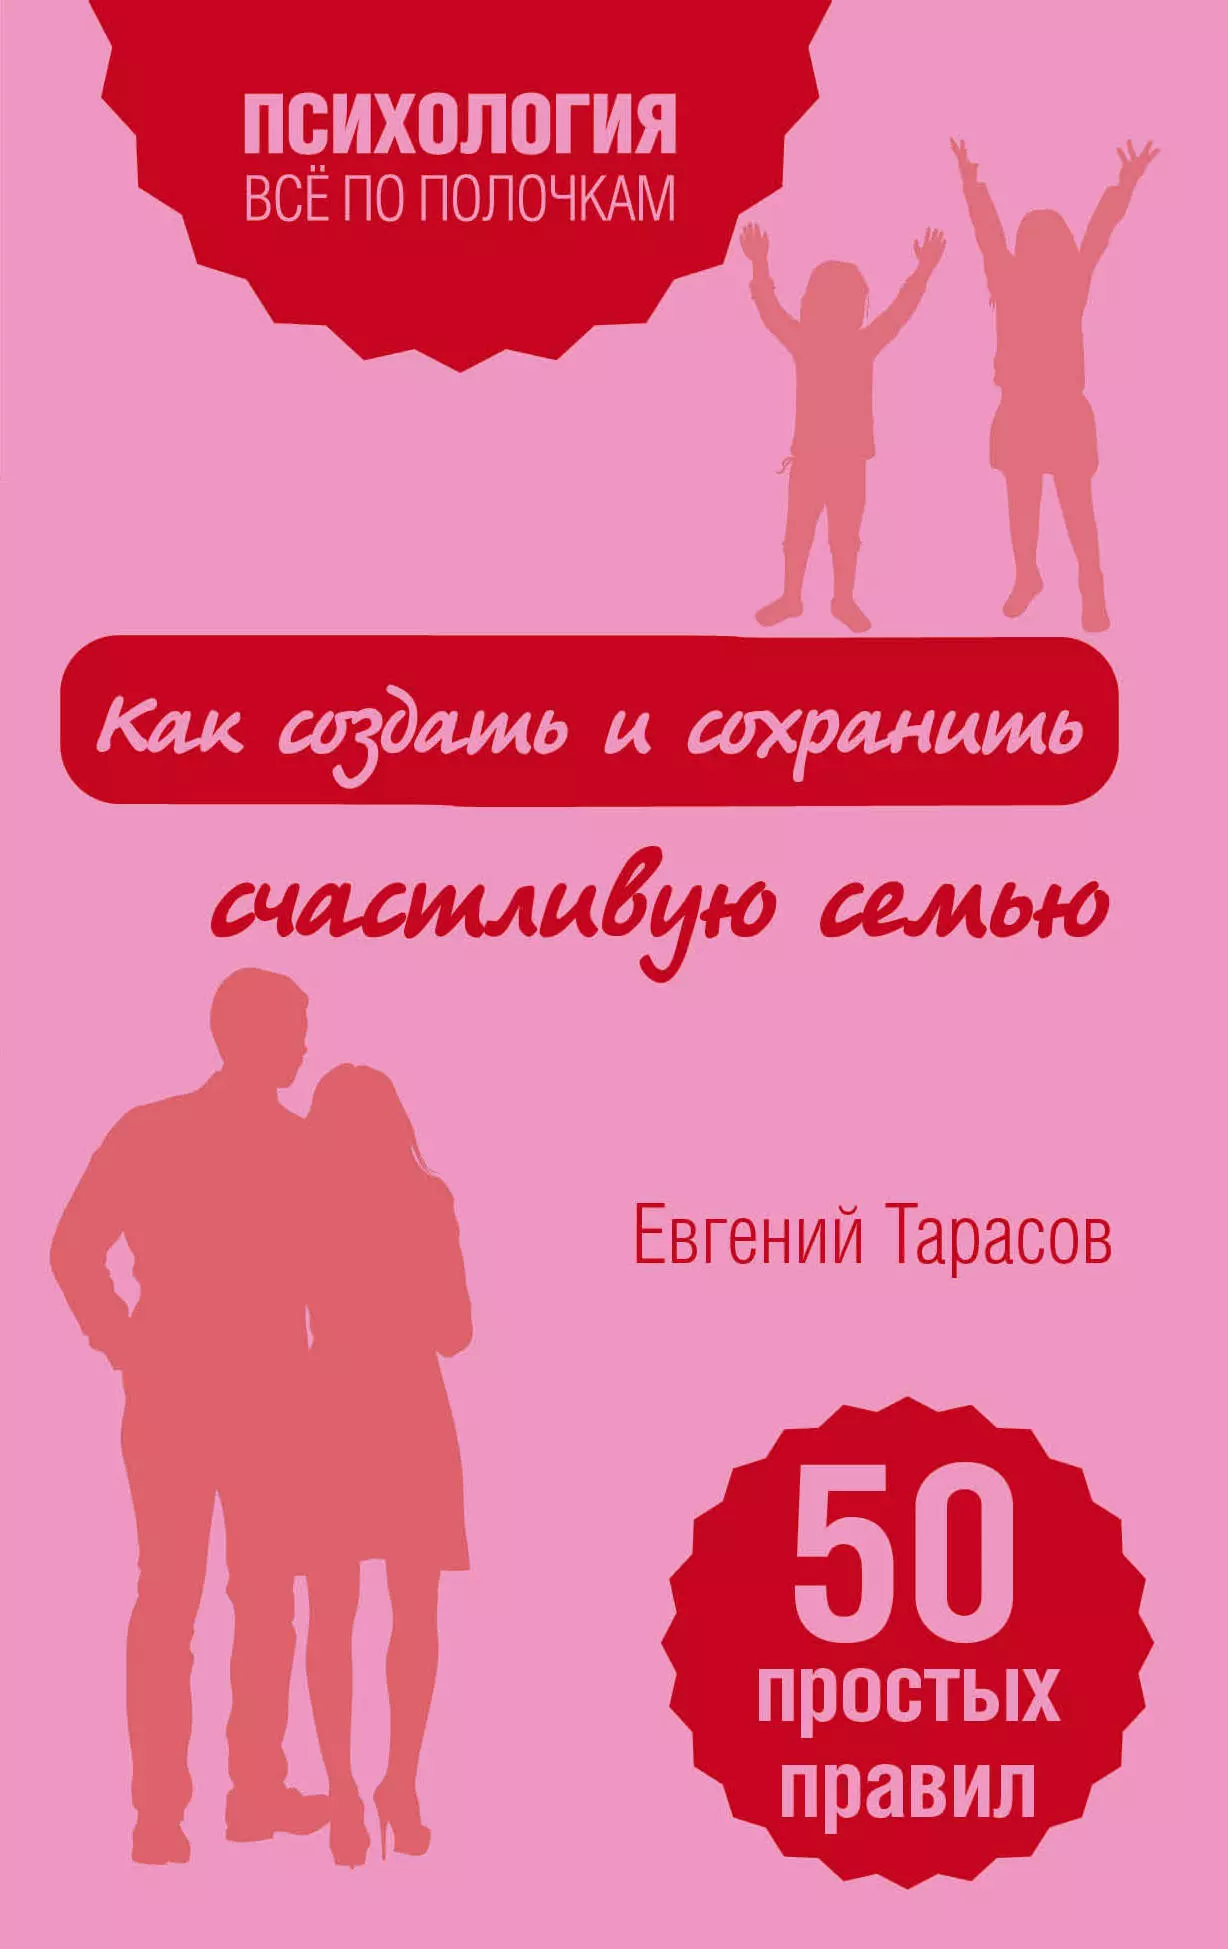 Тарасов Евгений Александрович - Как создать и сохранить счастливую семью